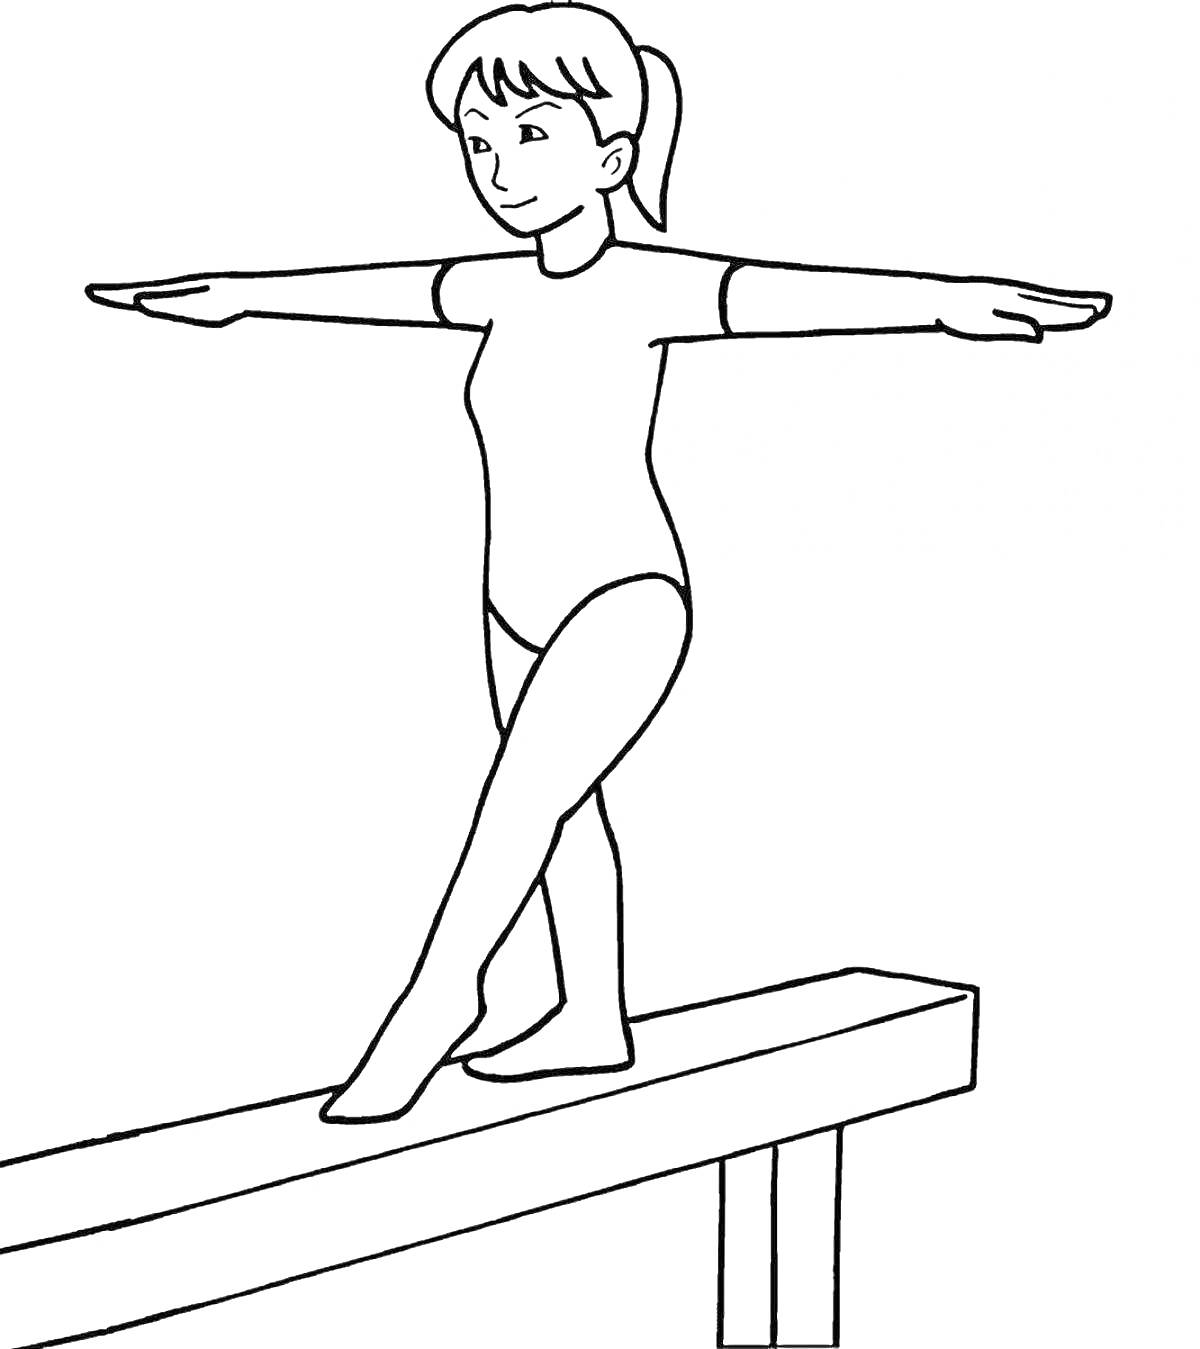 Девочка-гимнастка на бревне выполняющая упражнение в гимнастическом костюме